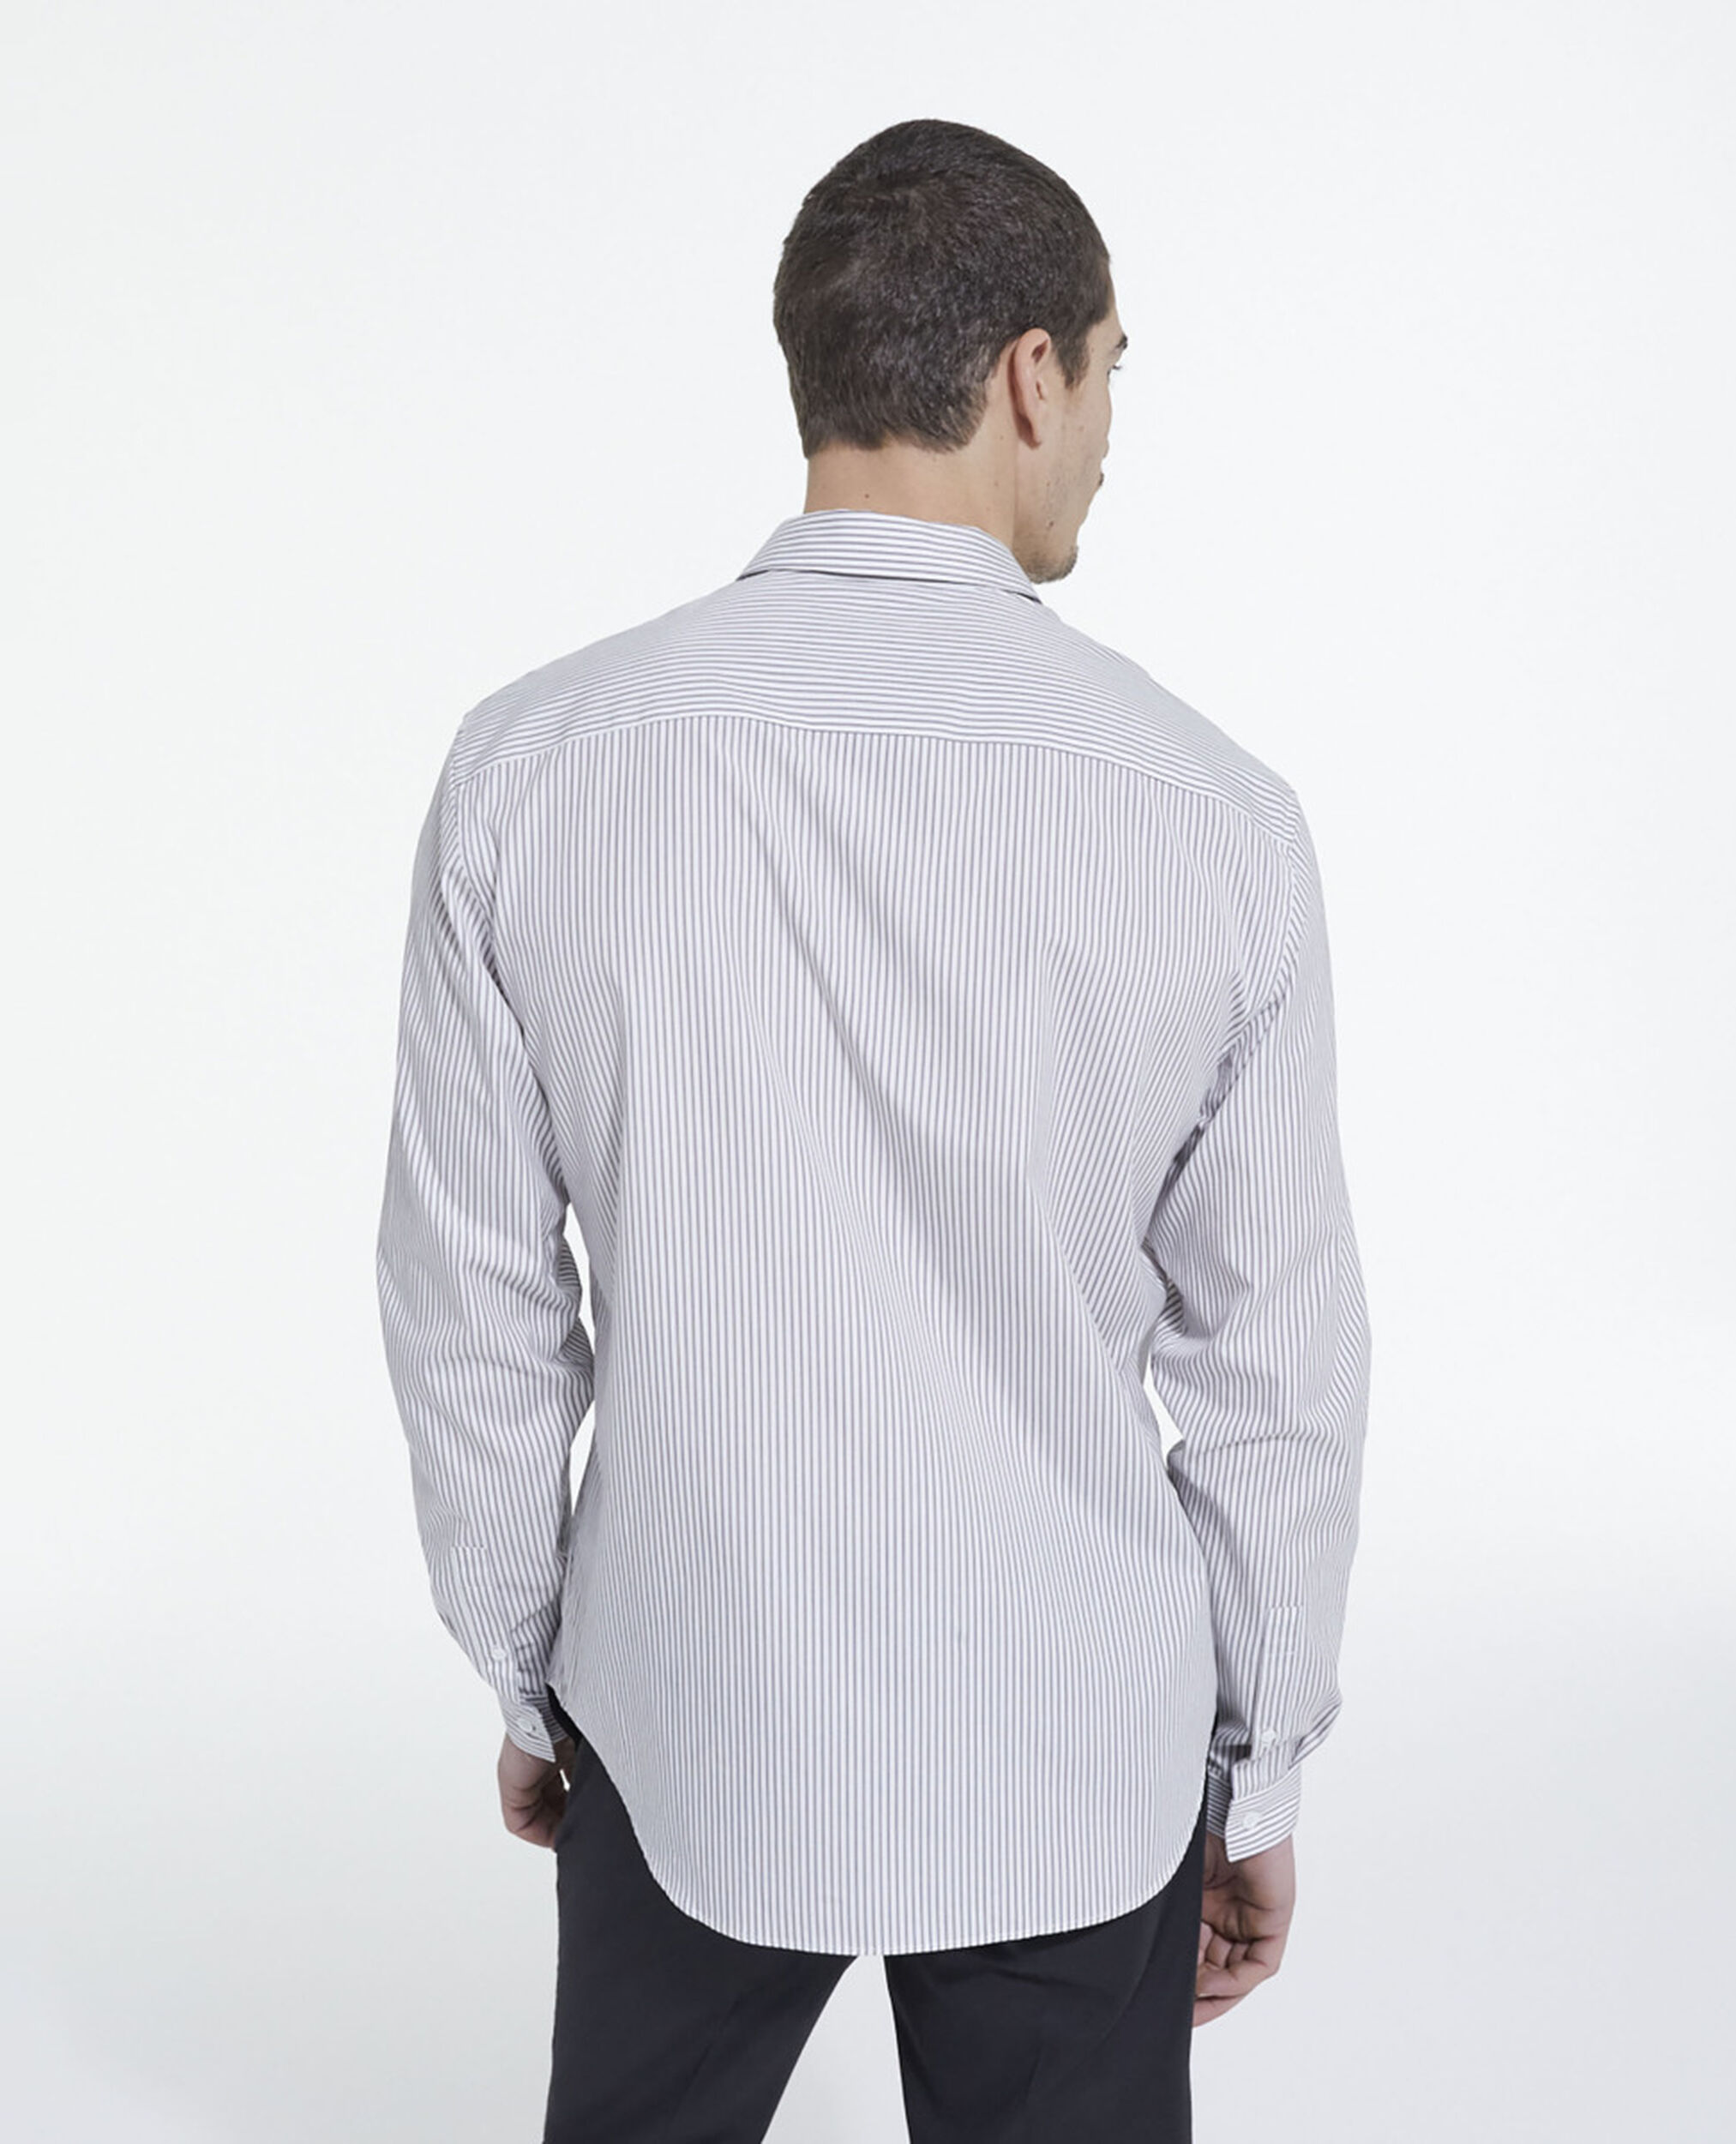 Camisa rayas con cuello clásico, GREY-WHITE, hi-res image number null